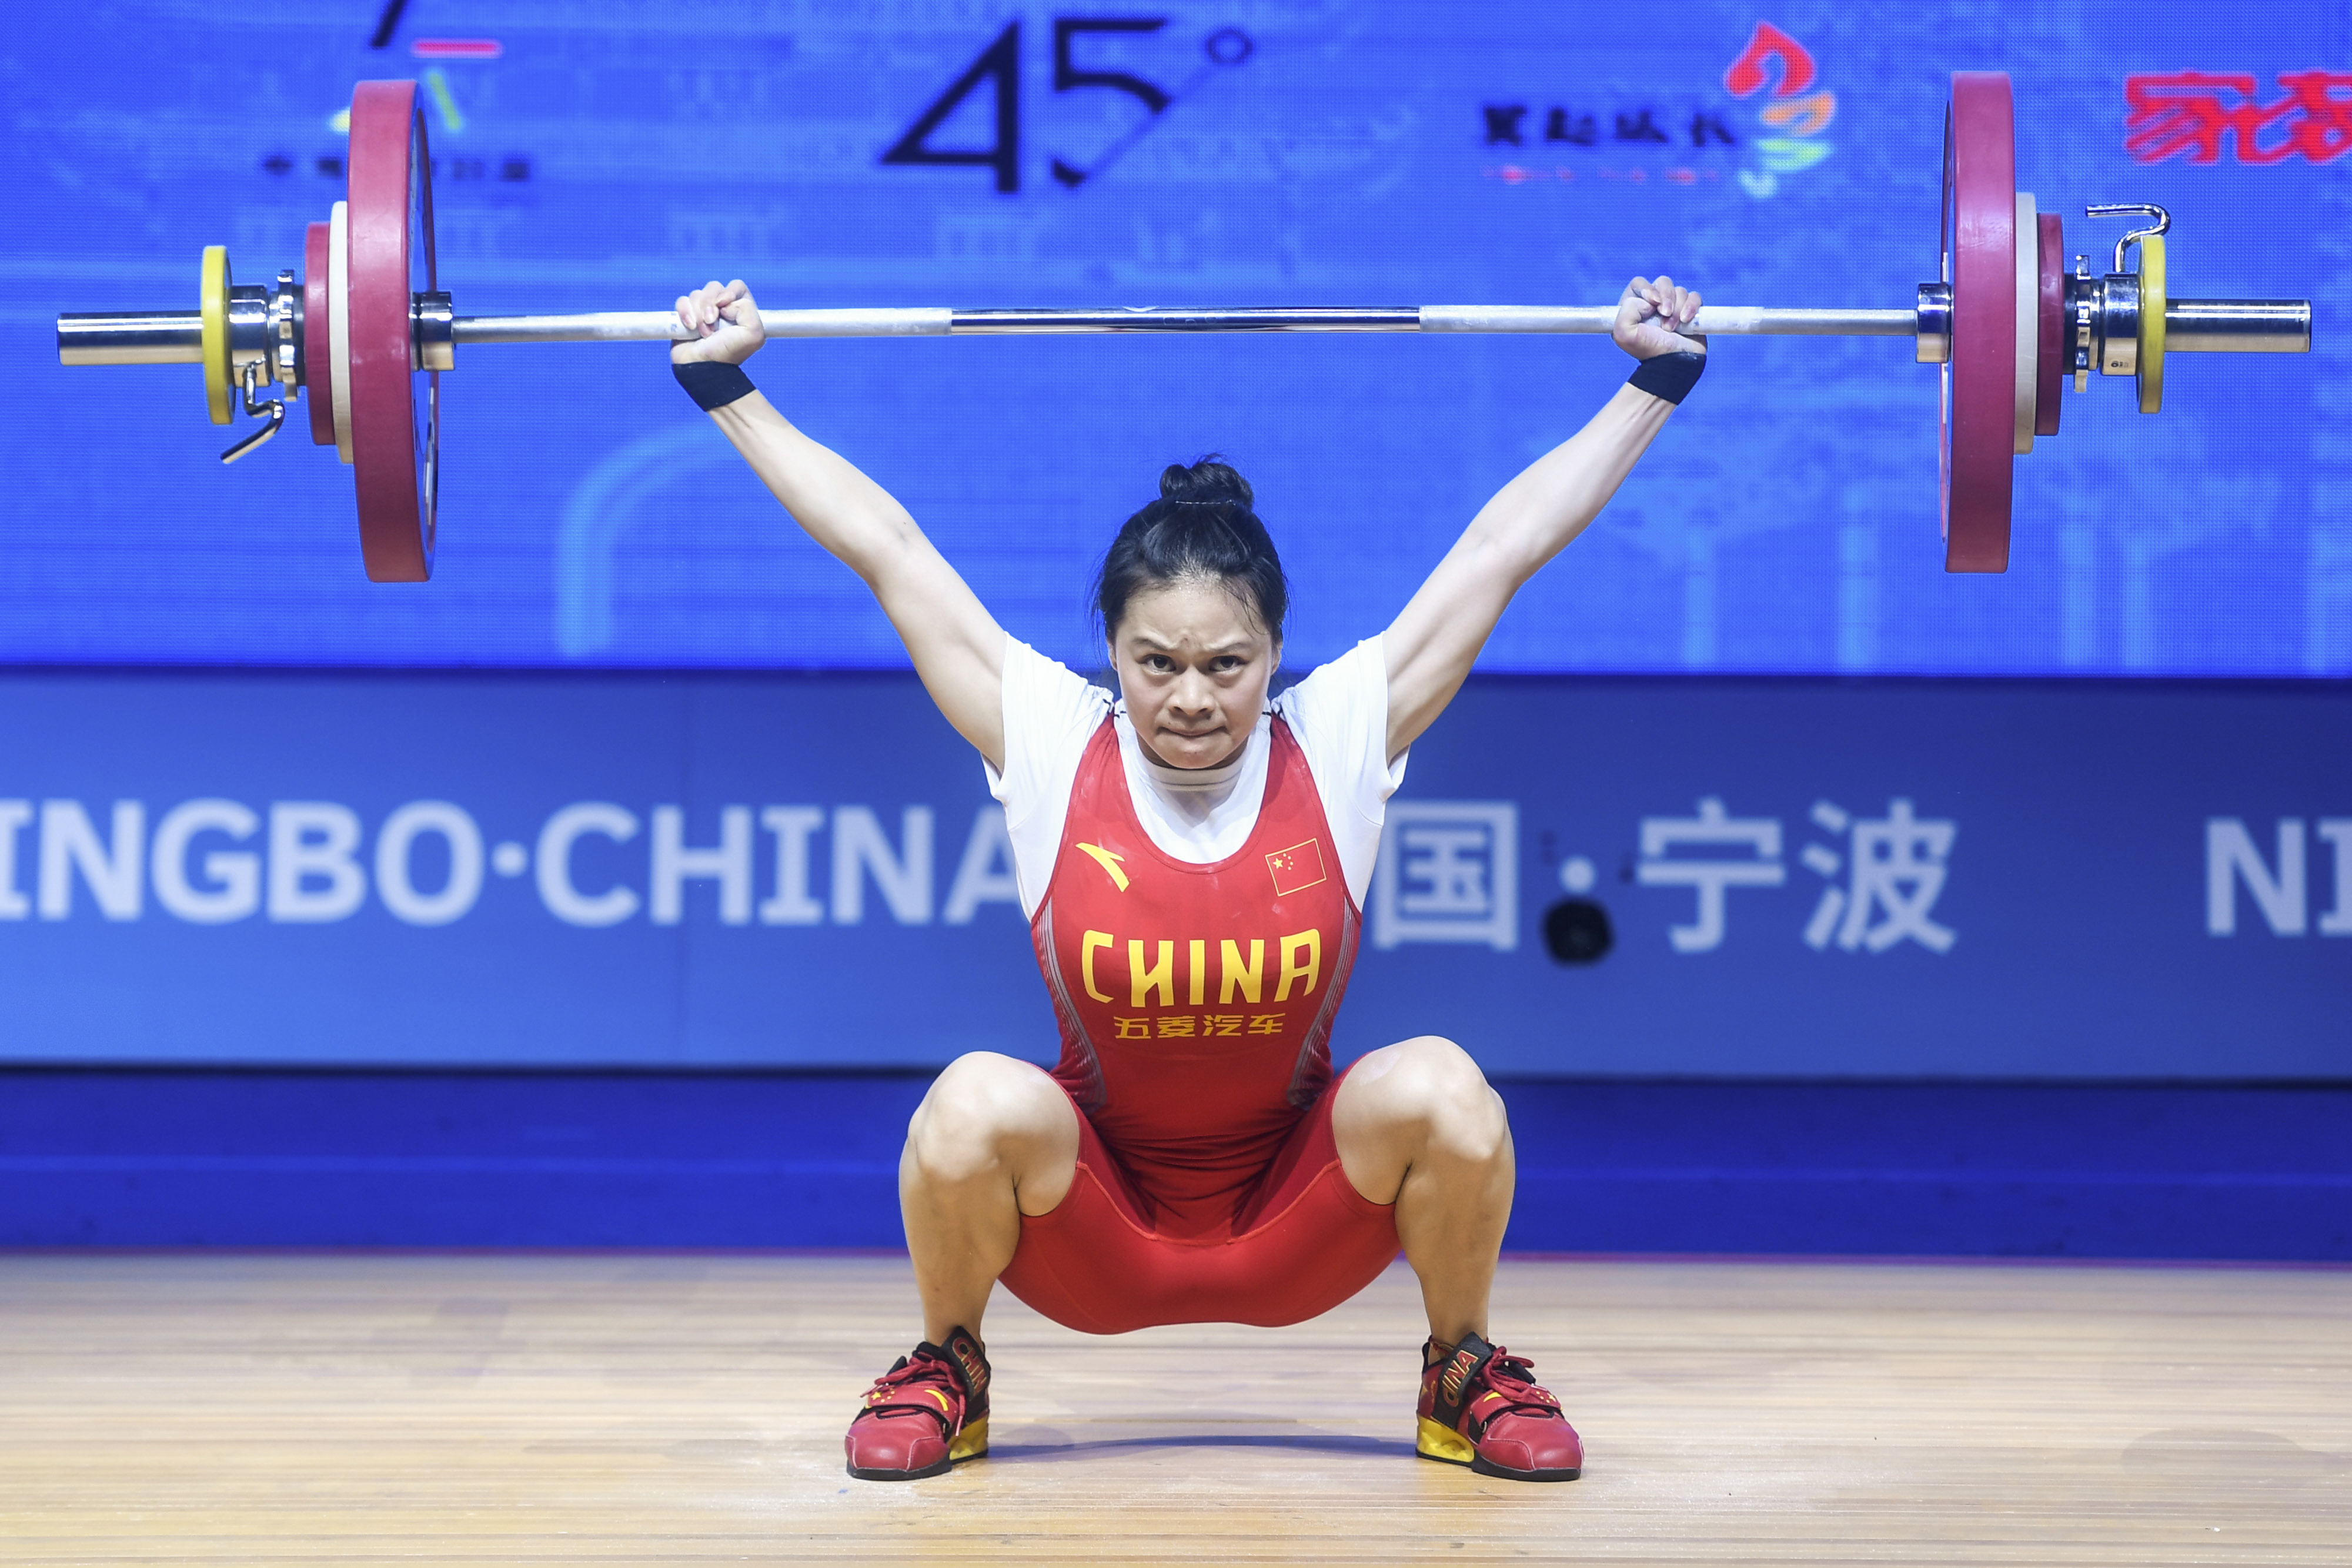 举重——亚锦赛:女子49公斤级赛况